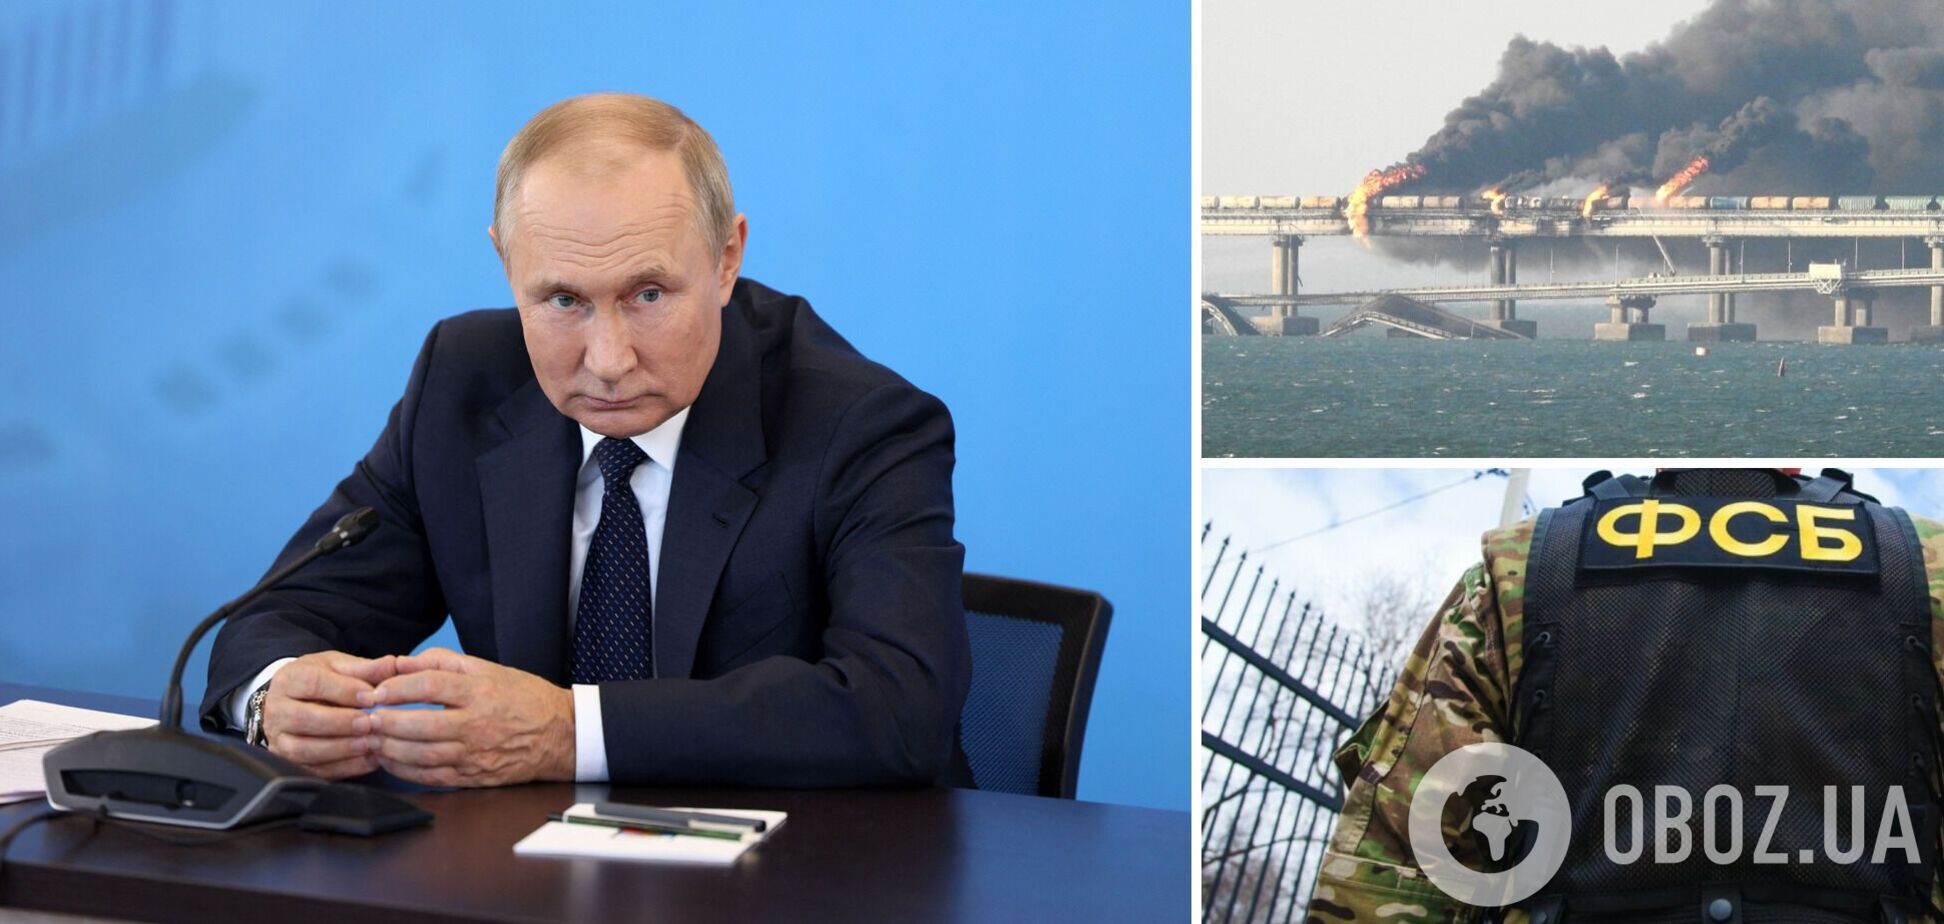 Путін доручив ФСБ забезпечувати захист транспортного переходу через Керченську протоку після 'бавовни' на мосту  